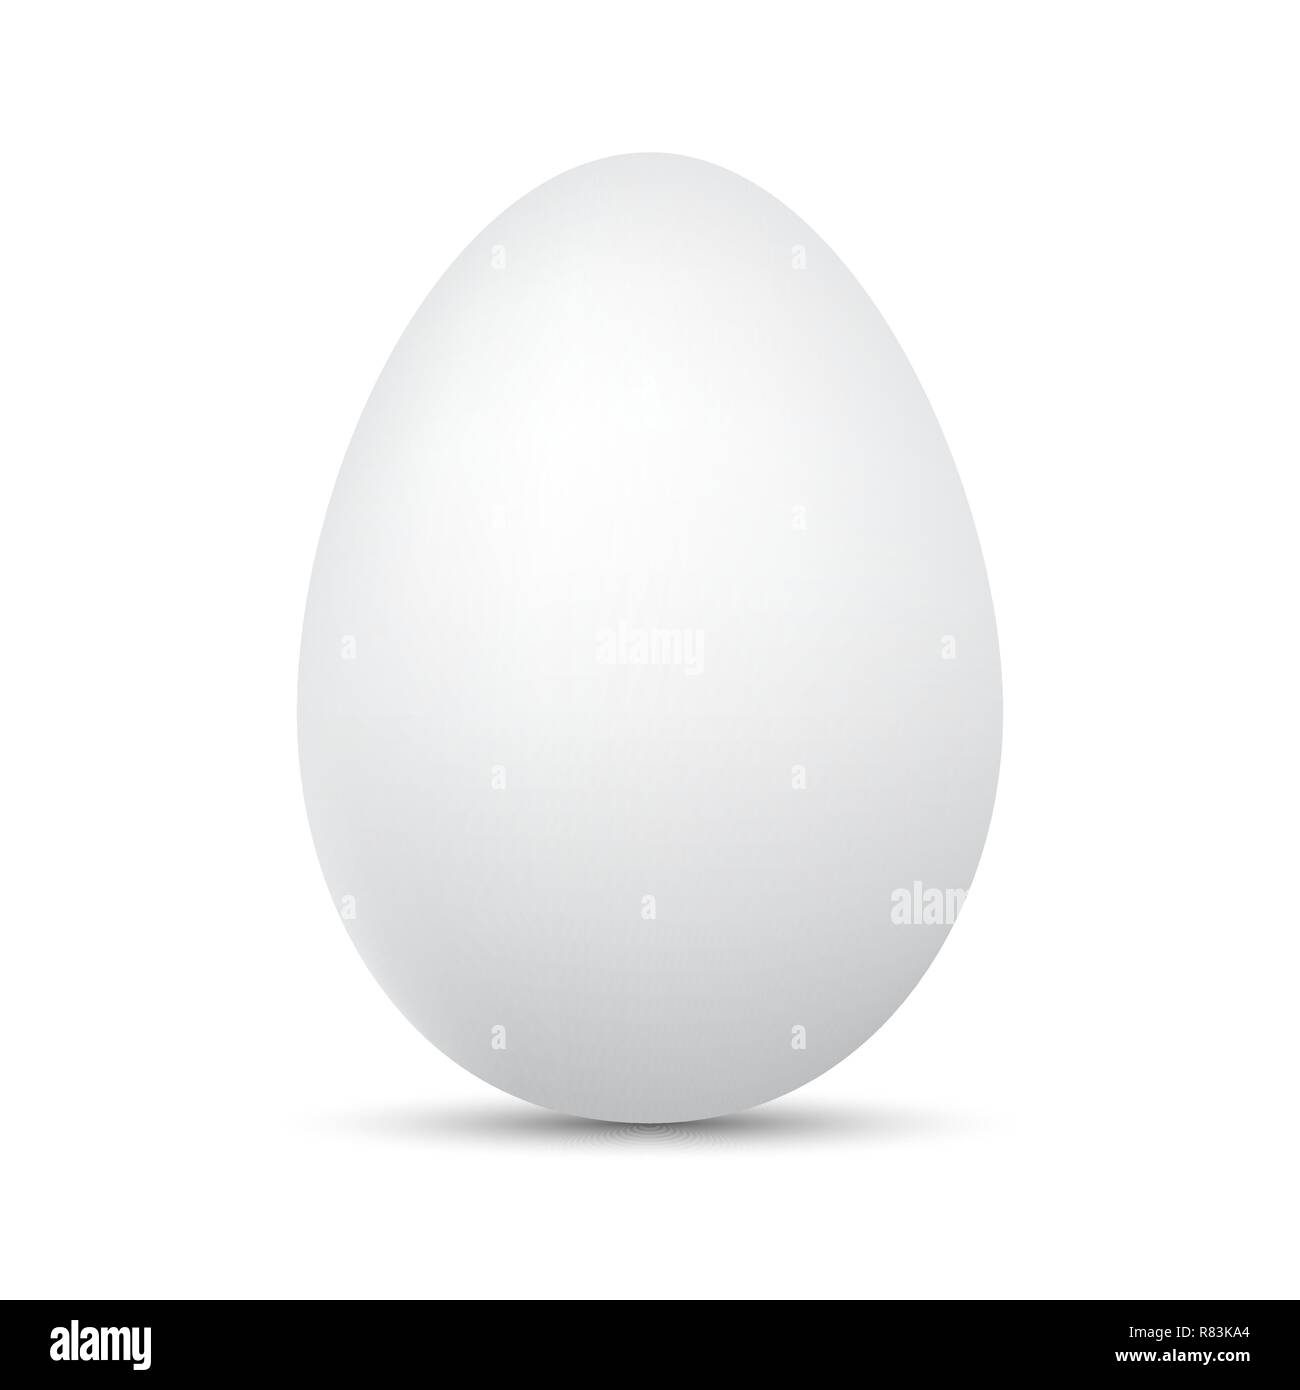 Uovo bianco isolato. Illustrazione Vettoriale. Uovo di pollo con ombra  Immagine e Vettoriale - Alamy